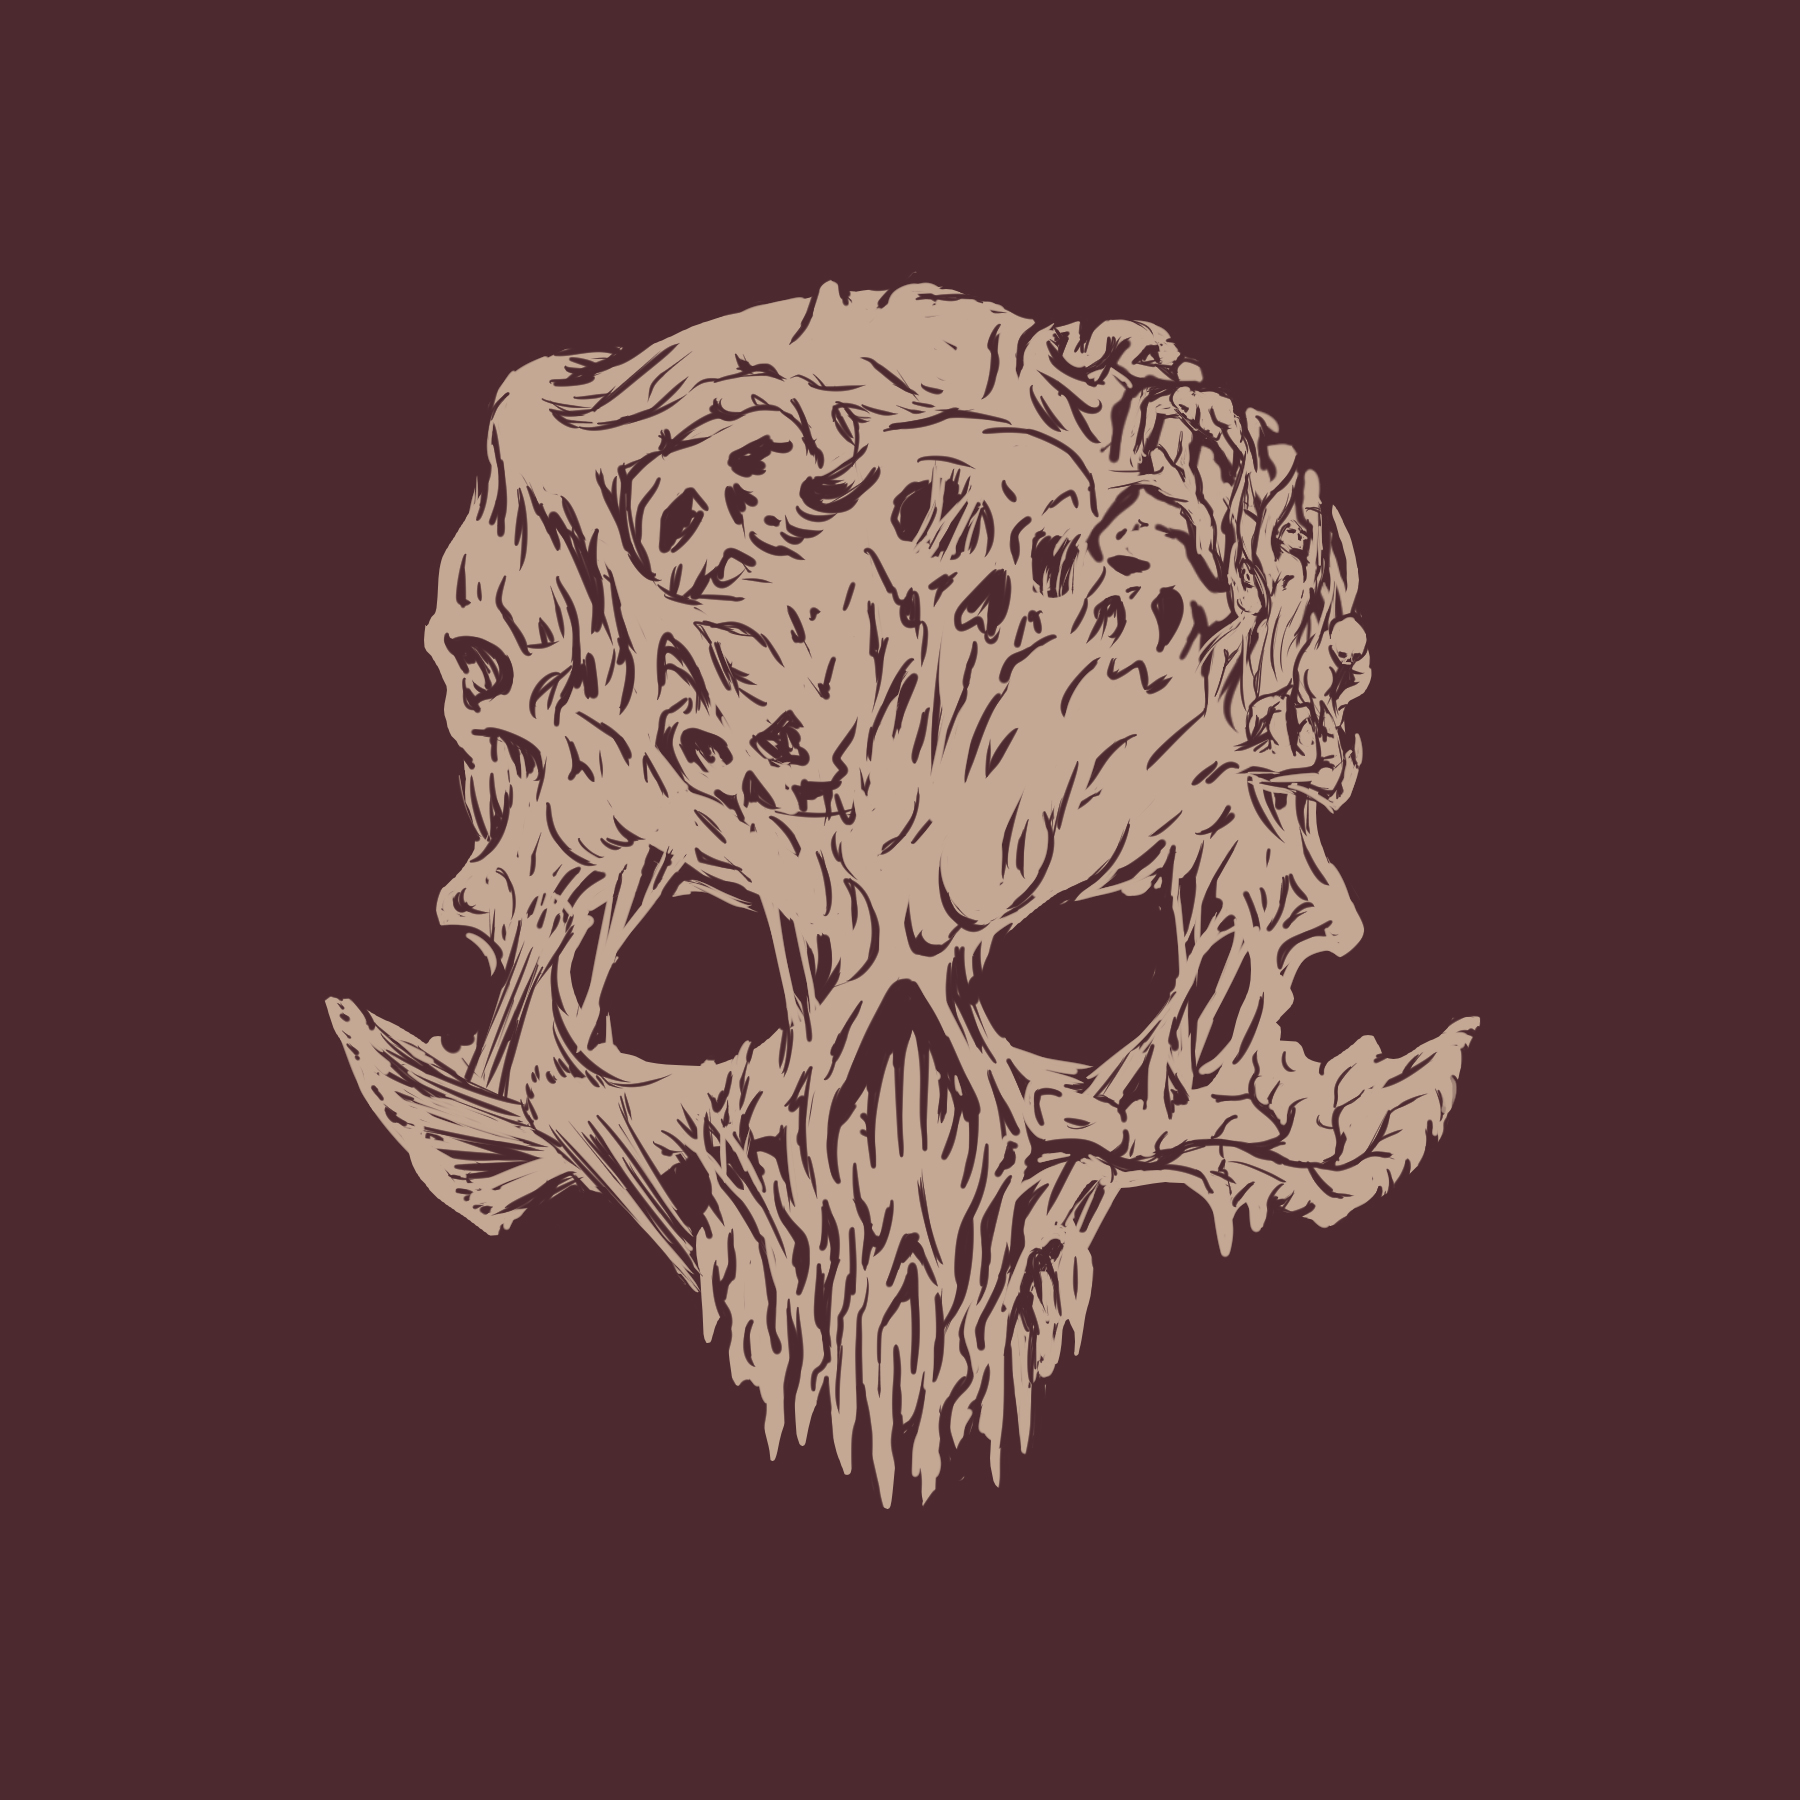 SSO-CotD-Skull-Flesh-06.jpg